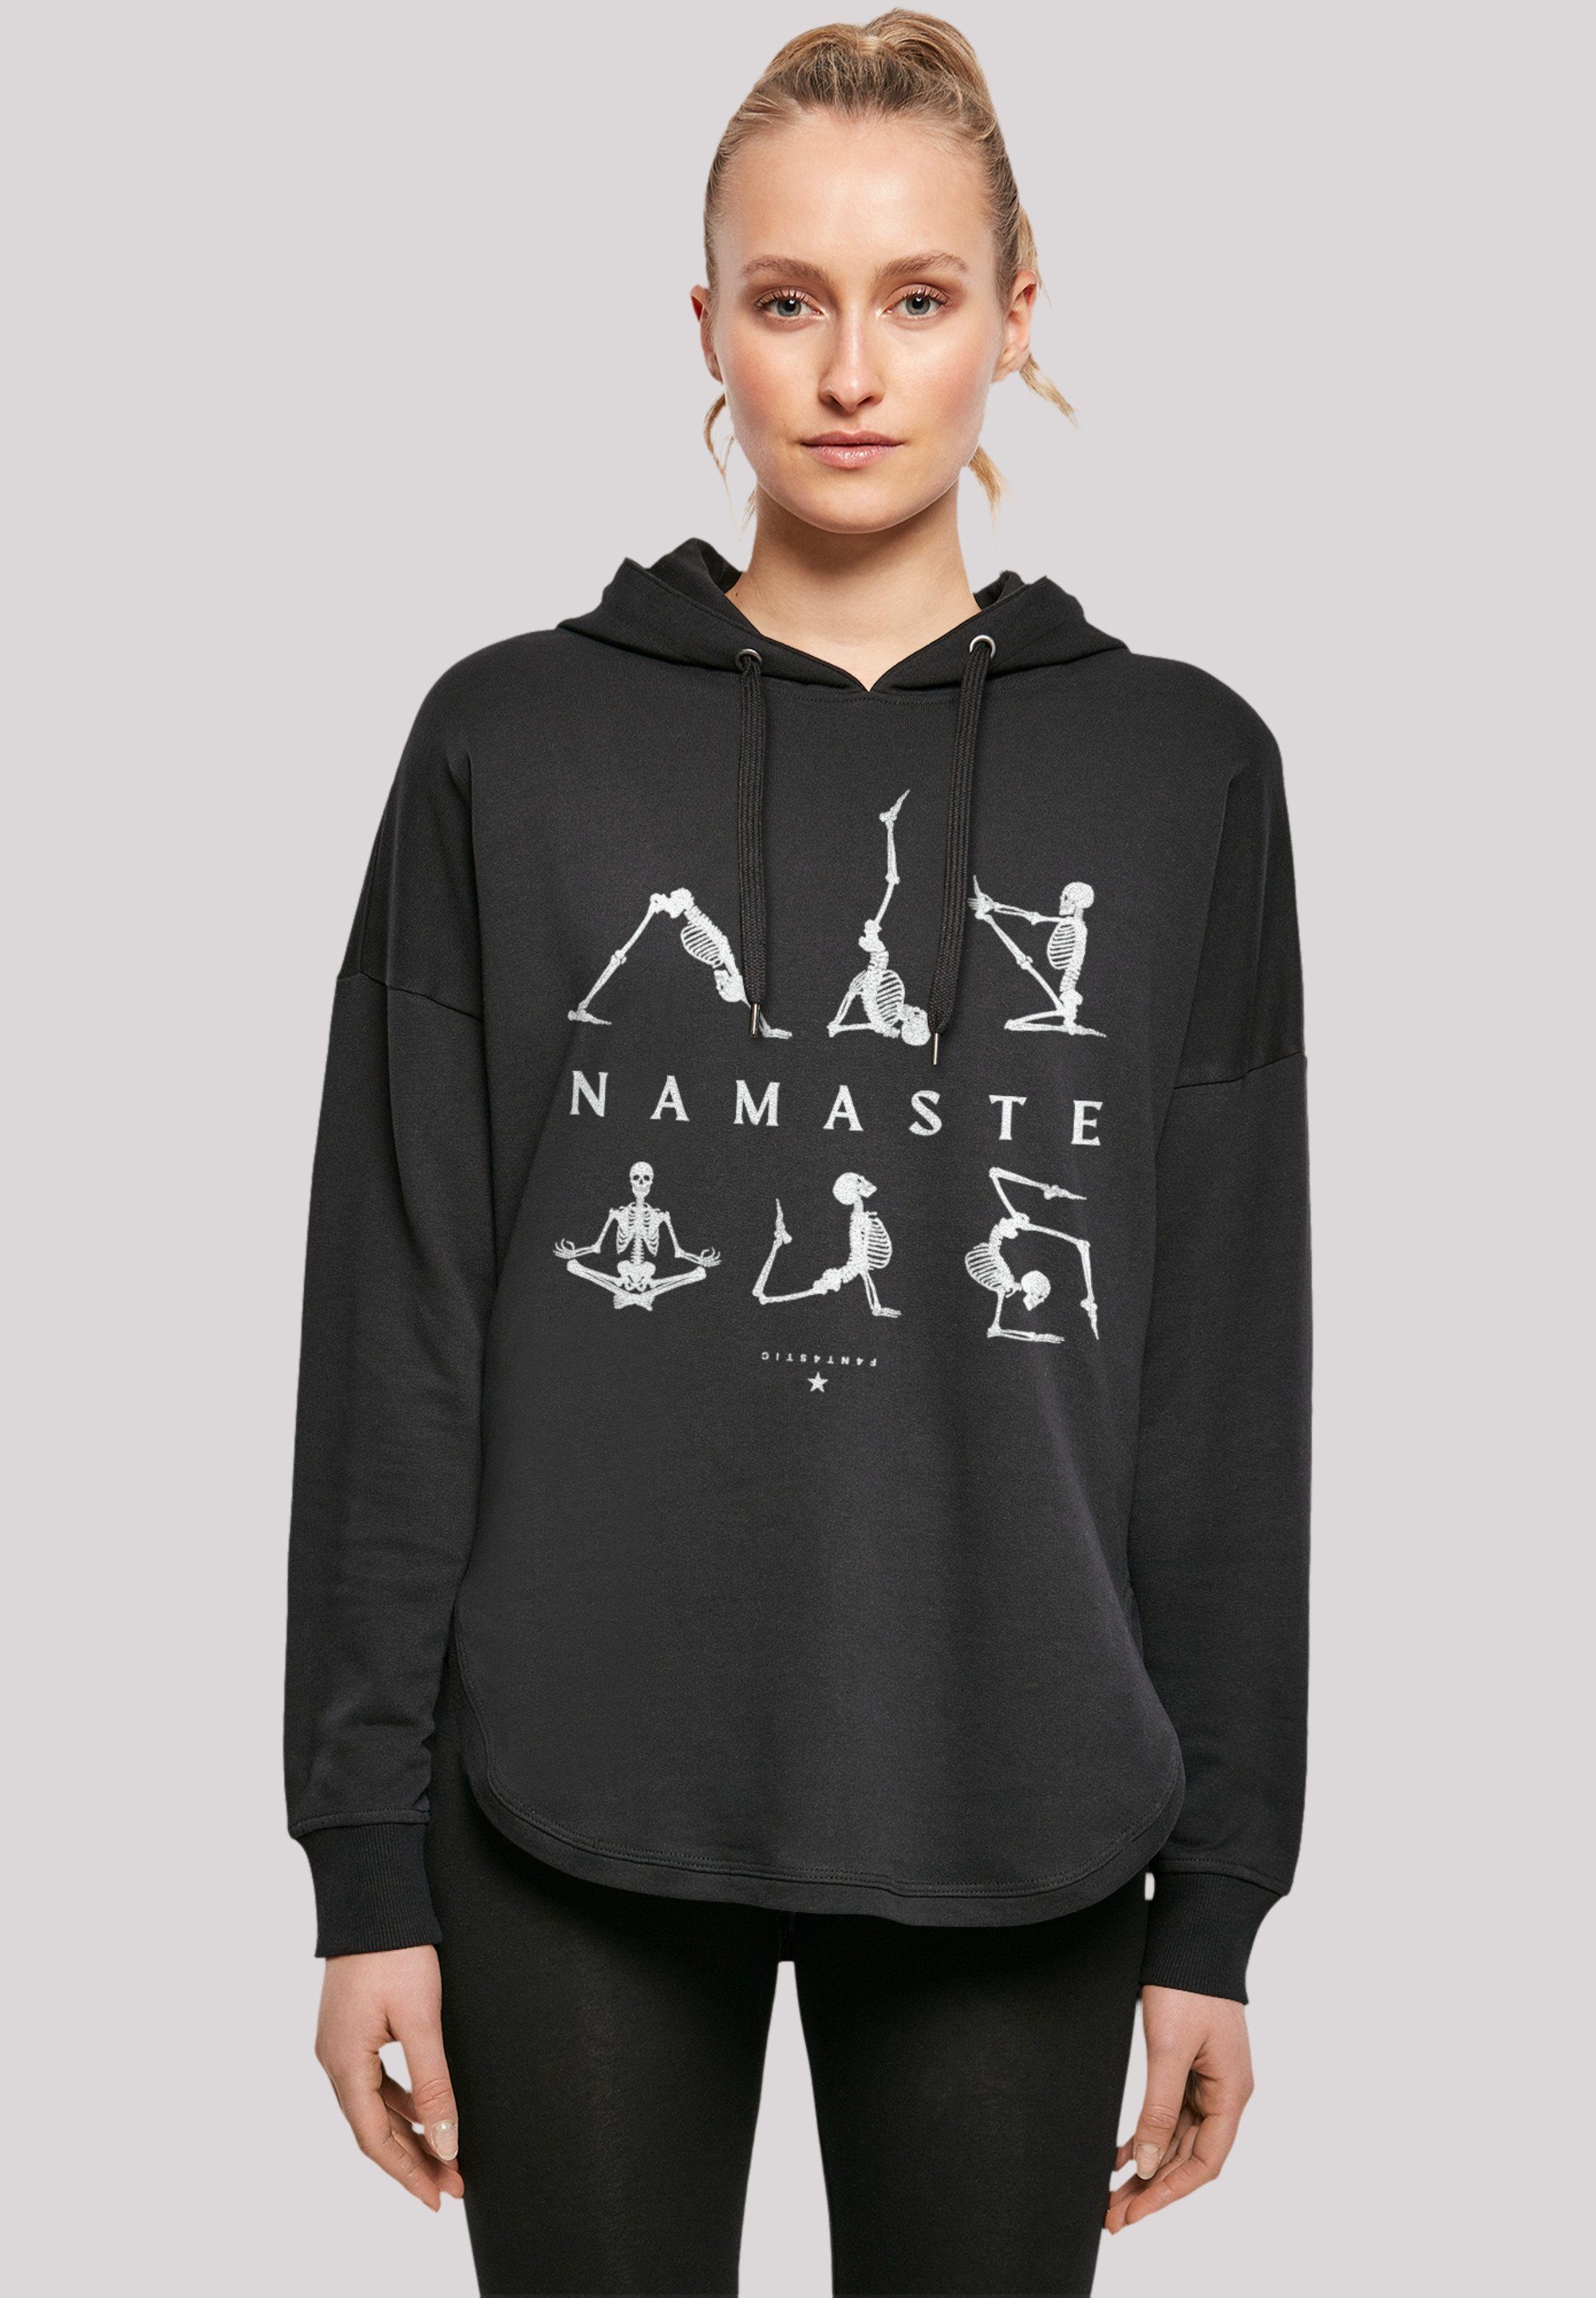 F4NT4STIC Sweatshirt Namaste Yoga Skelett Halloween Print, Gemütlicher  Dammen Hoody mit sportlichem Look